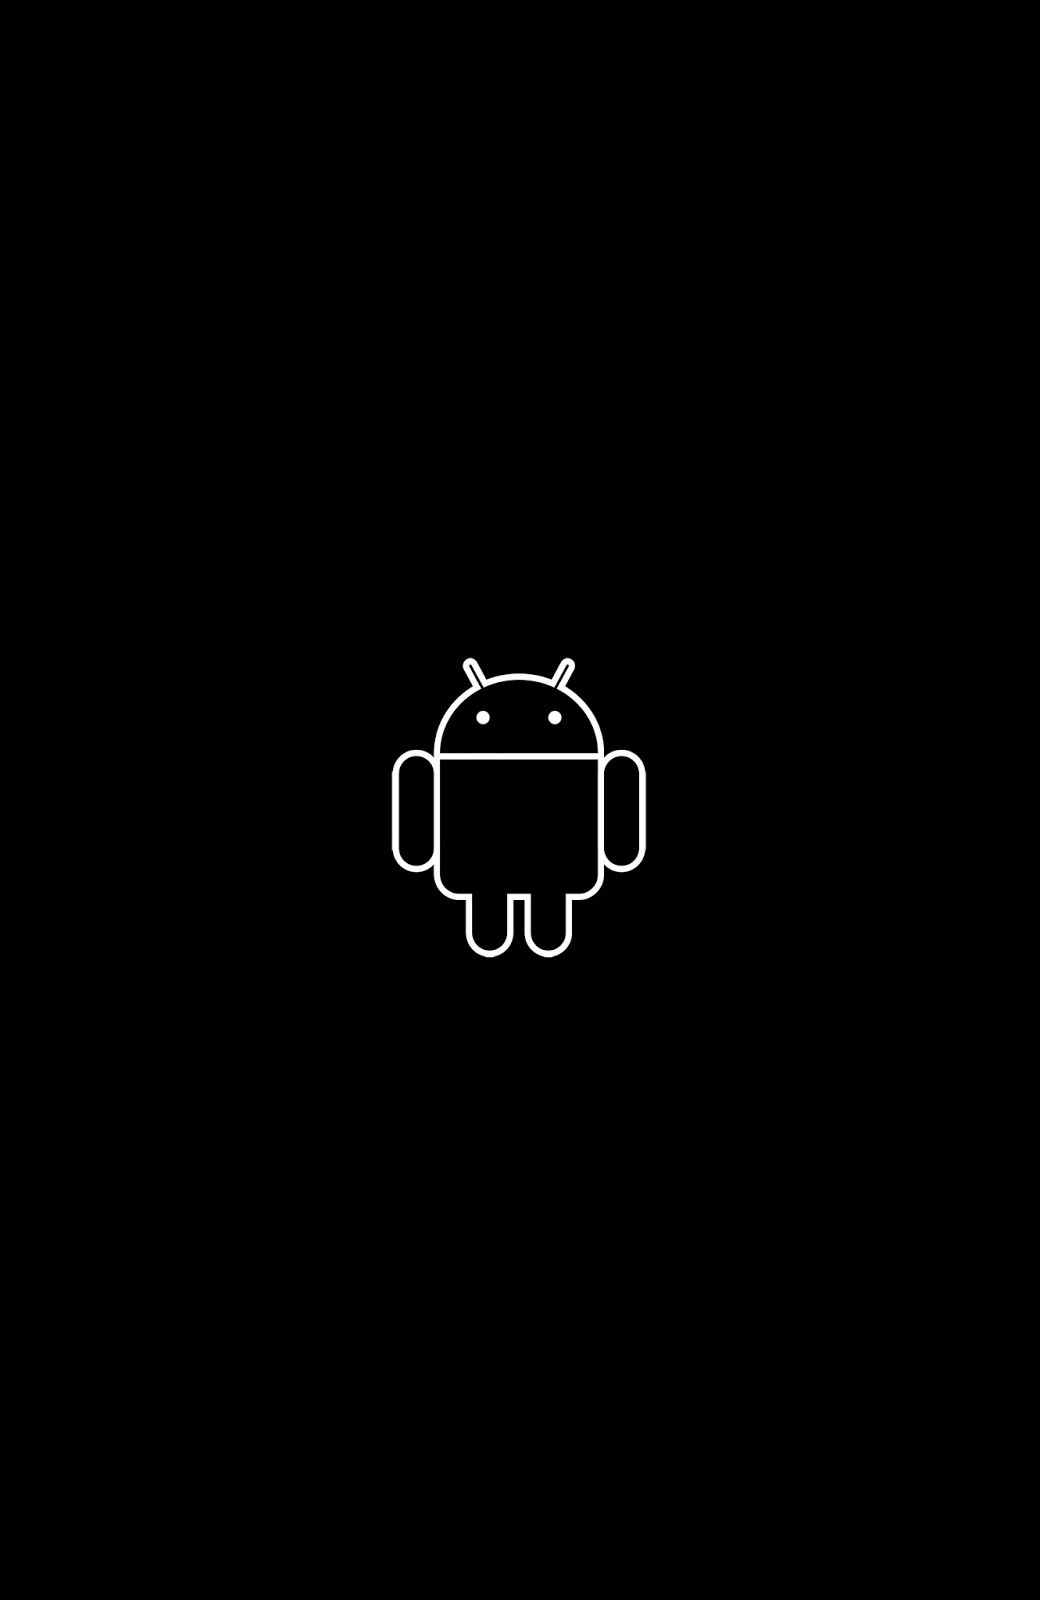 Hình nền android đen mang đến một vẻ đẹp mộc mạc, đơn giản nhưng không kém phần tinh tế và sang trọng. Kết hợp với những hình ảnh tối màu được bố trí hợp lý, hình nền android đen sẽ giúp cho thiết bị của bạn trở nên lạnh lùng, quyến rũ và ấn tượng.